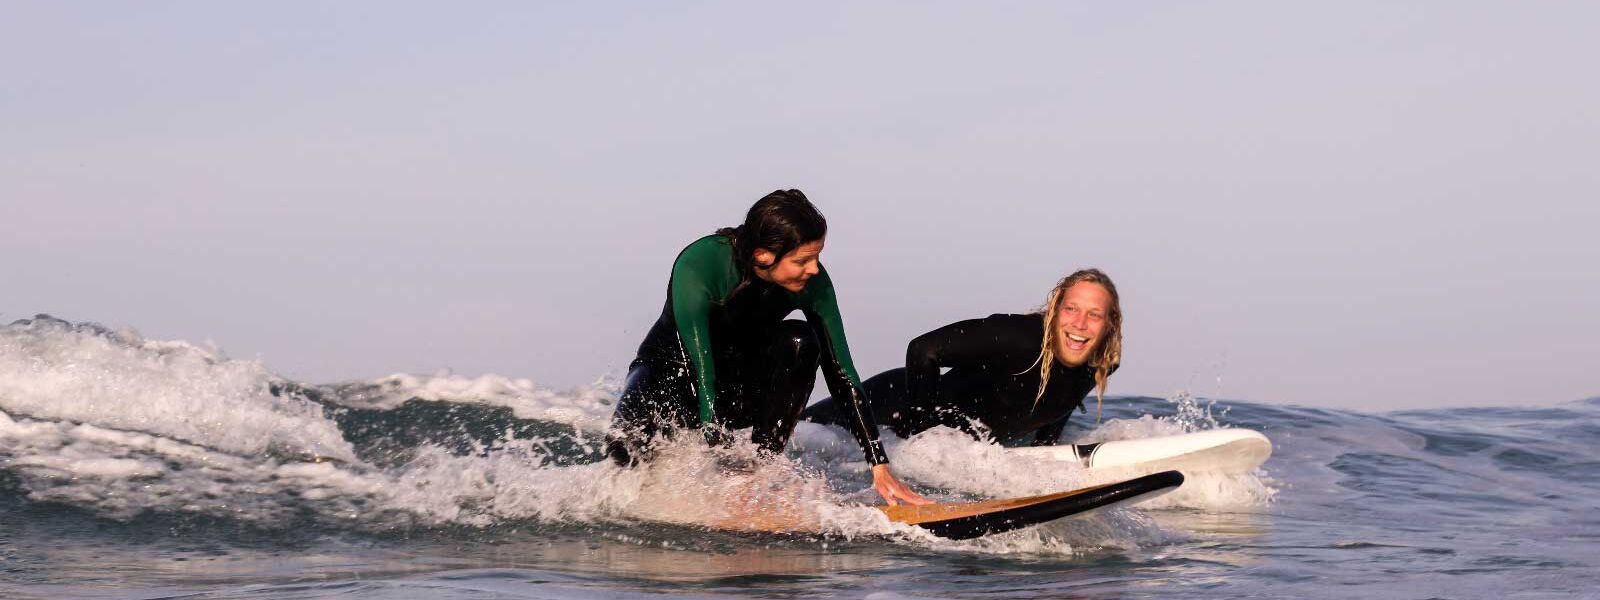 Escuela de Surf en El Palmar para principiantes